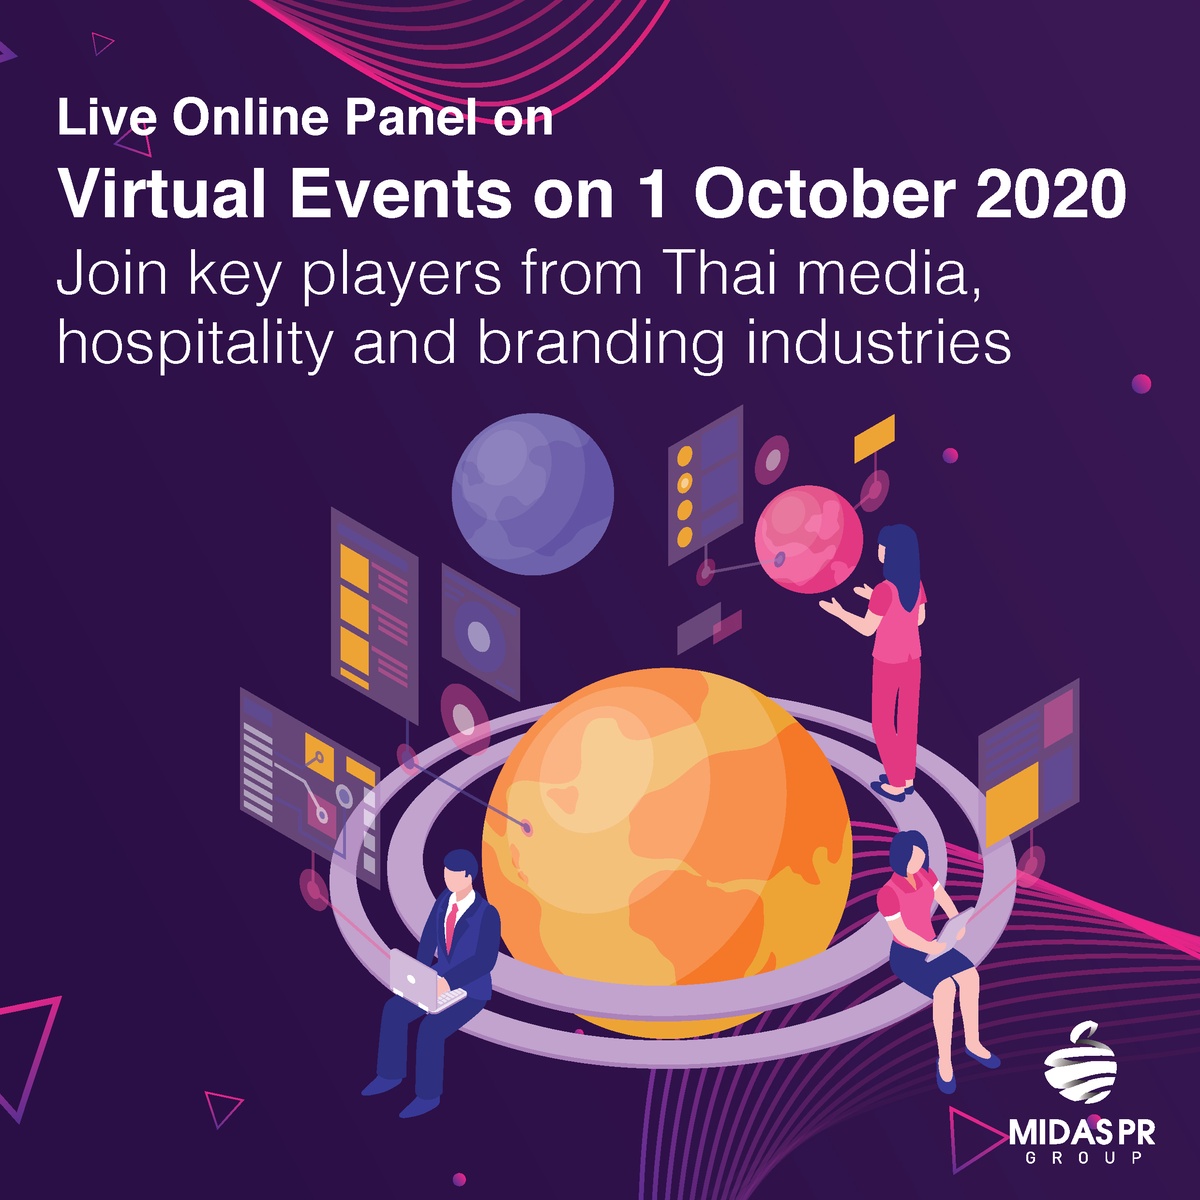 งานสัมมนาออนไลน์ Live ในหัวข้อ การจัดงานแบบ Virtual Events ในวันที่ 1 ตุลาคม 2020 เข้าร่วมกับผู้มีบทบาทสำคัญในอุตสาหกรรมสื่อไทย การบริการ และการสร้างแบรนด์ของไทย